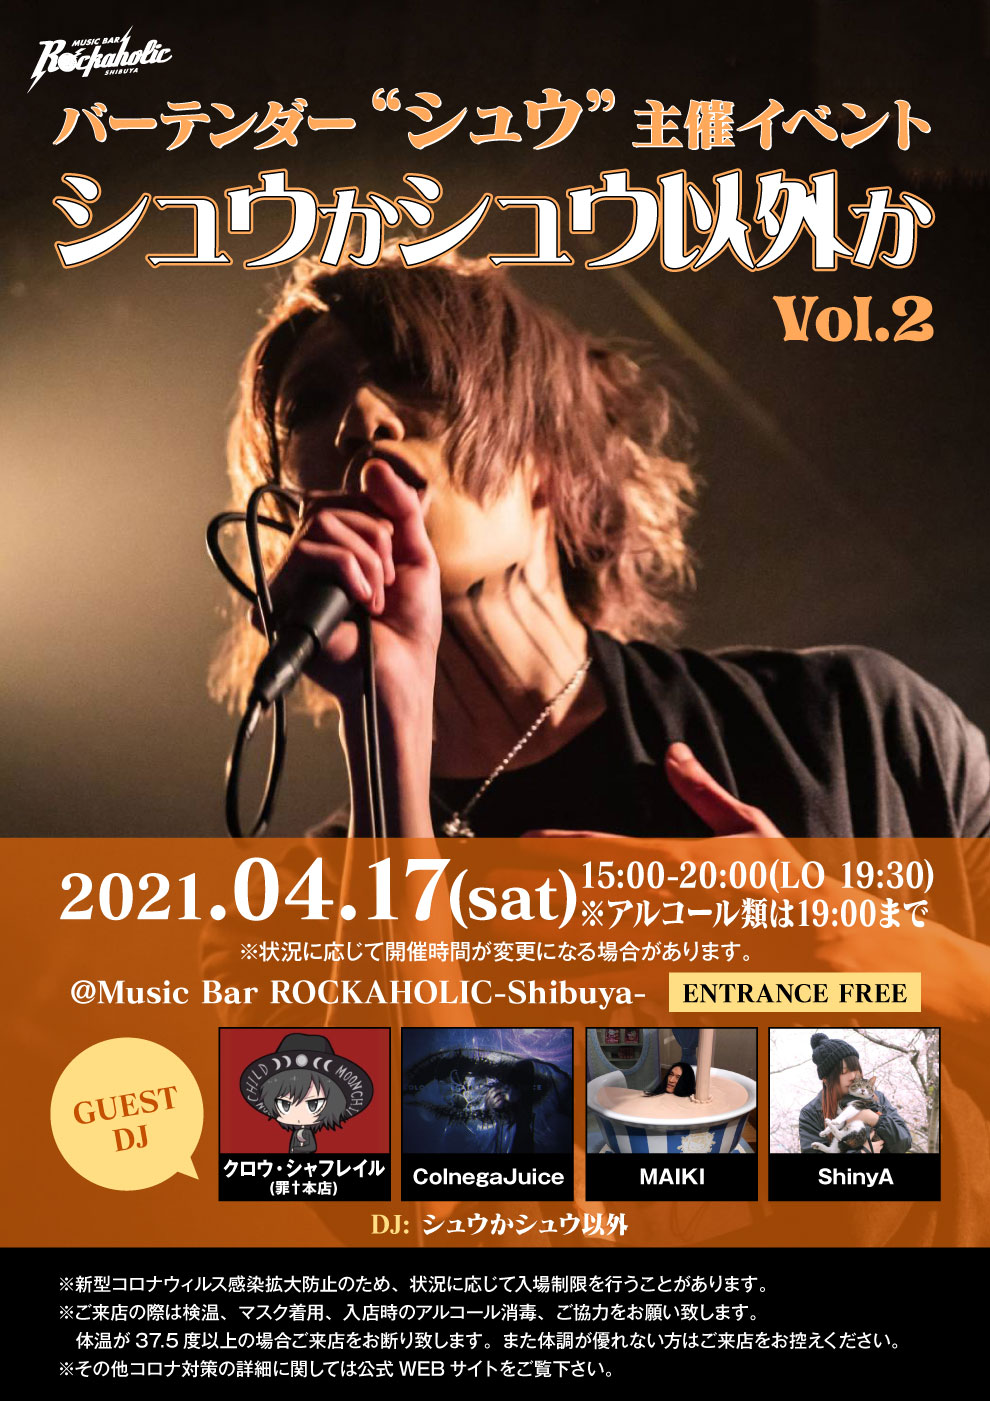 https://bar-rockaholic.jp/shibuya/blog/IMG_5013.JPG